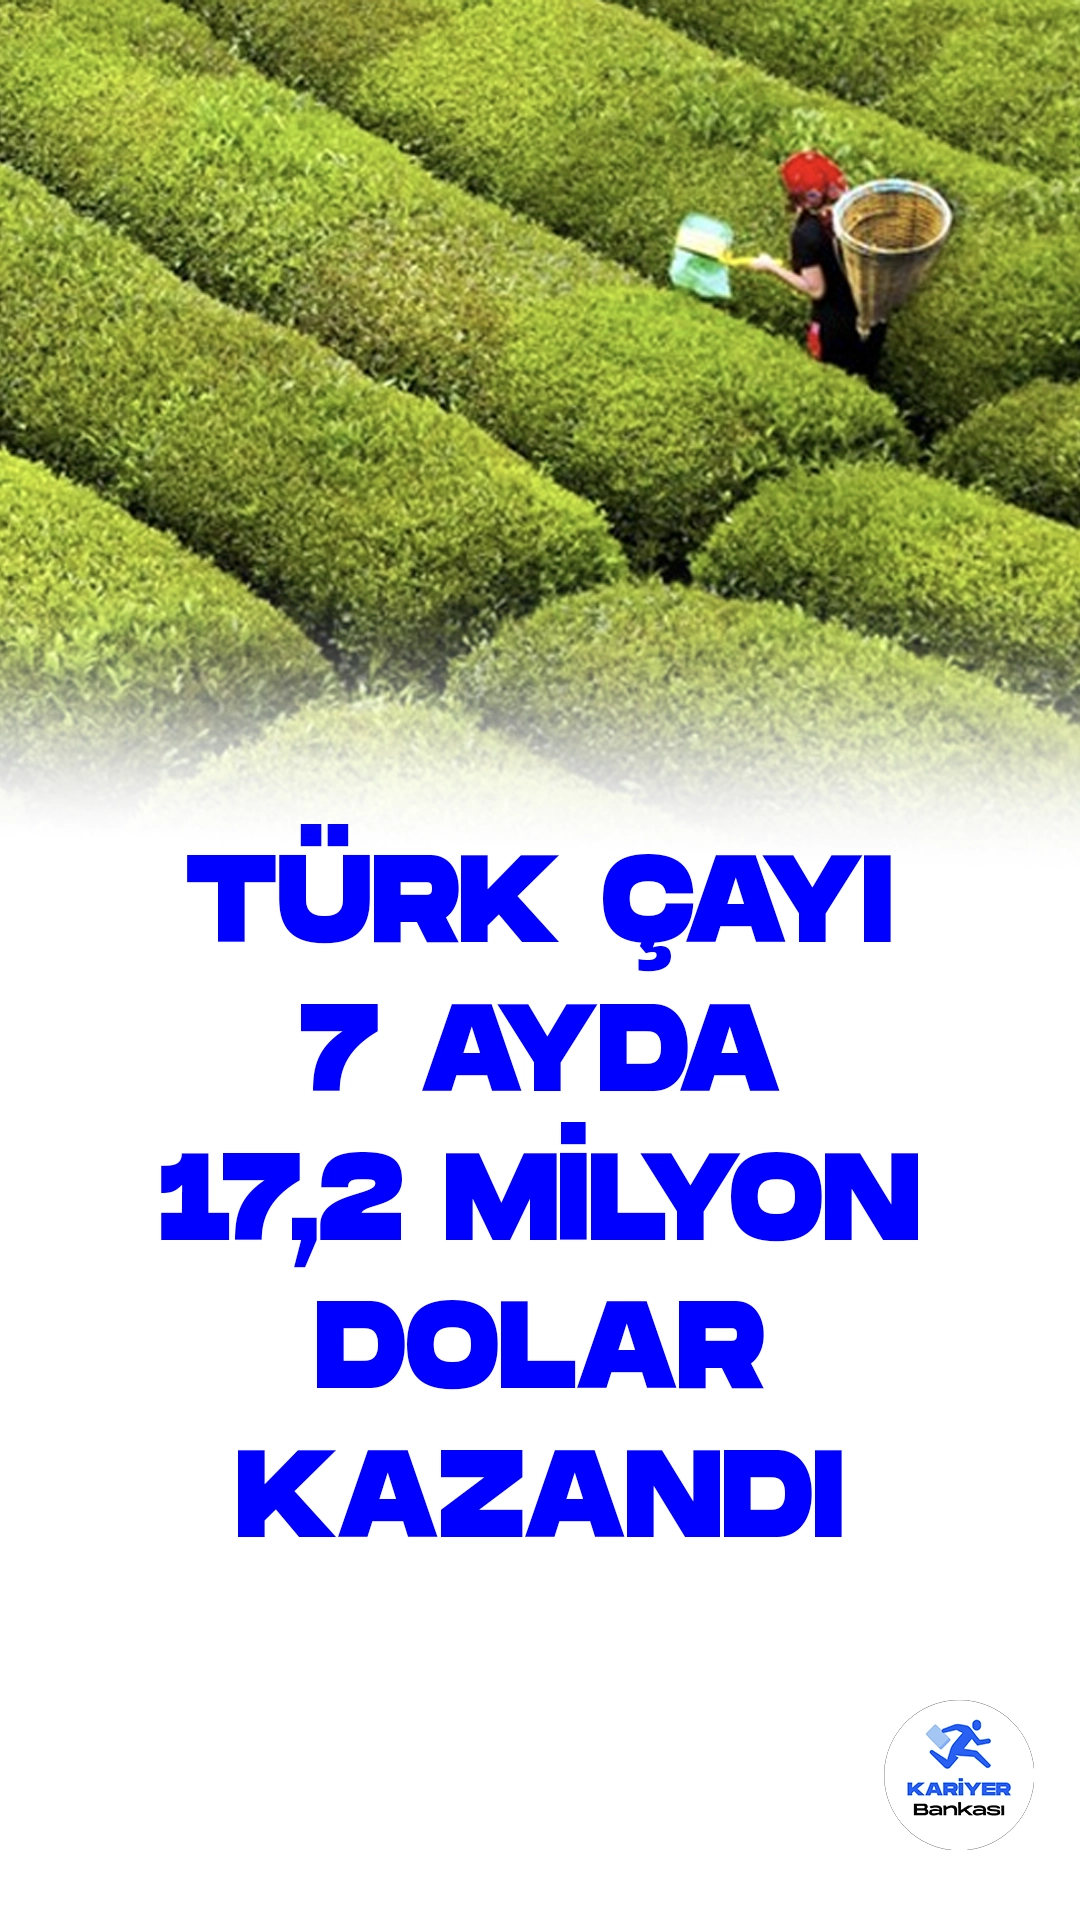 Türk Çayı İhracatta 7 ayda 17,2 Milyon Dolar Kazandırdı.Türkiye, ocak-temmuz döneminde gerçekleştirdiği çay ihracatında önemli bir büyüme kaydetti. Bu dönemde yapılan çay ihracatı, geçen yılın aynı dönemine kıyasla %30 artış göstererek 17 milyon 182 bin 55 dolar değerine ulaştı.